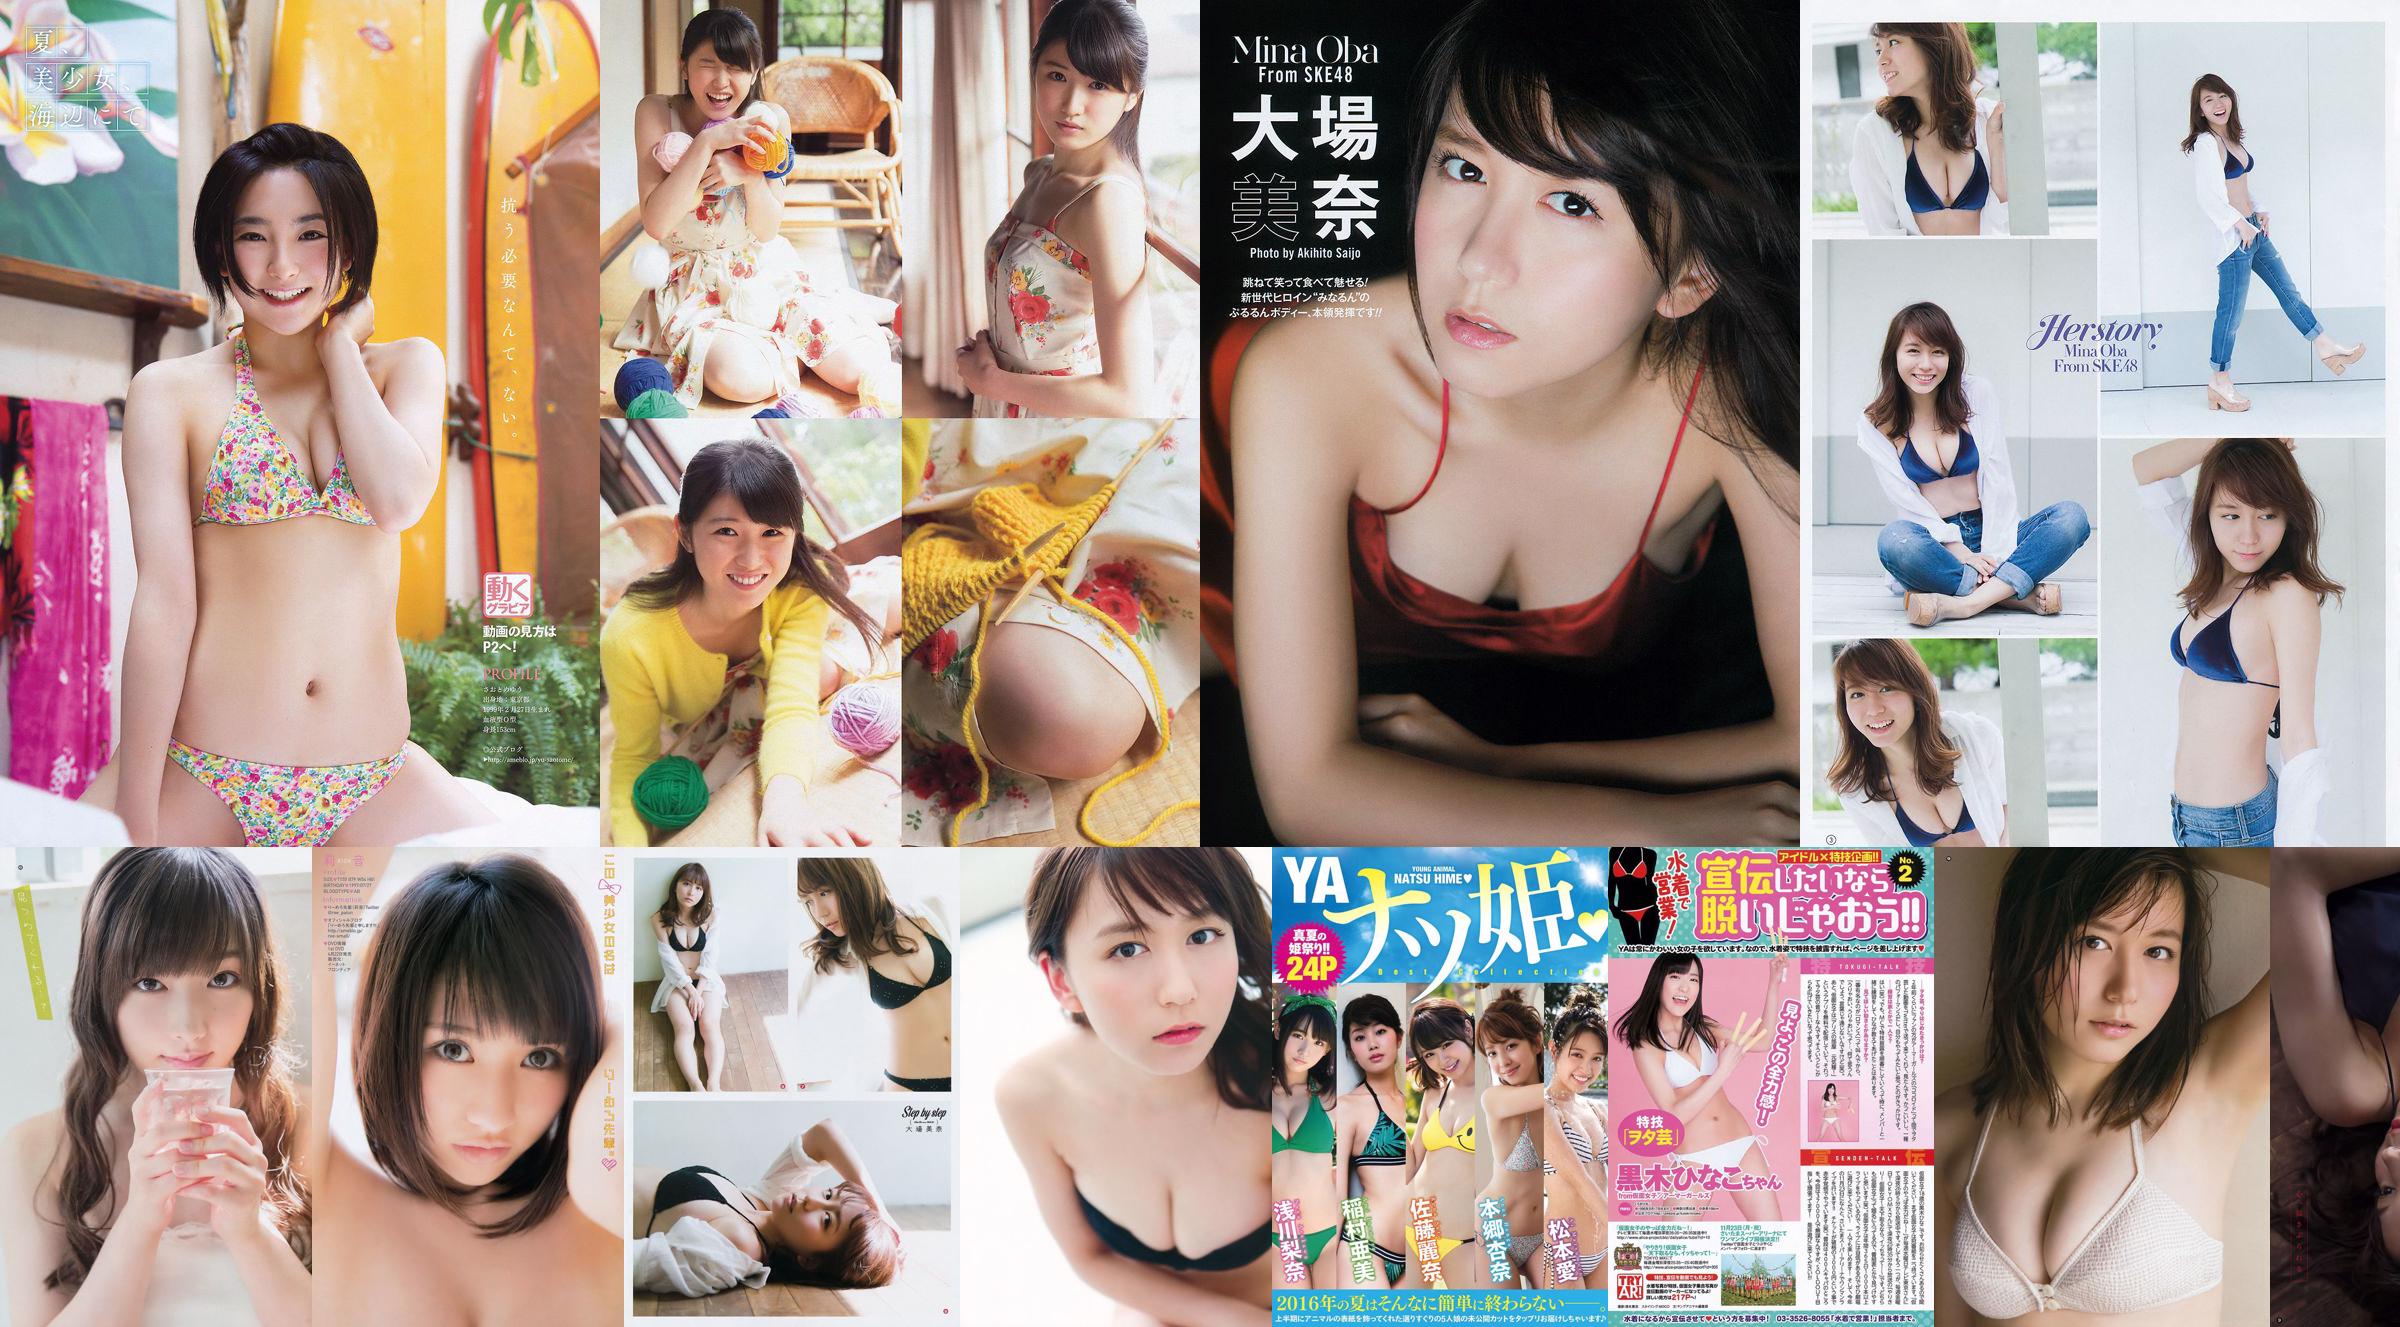 [Jeune Gangan] Mina Oba Mizuki Fukumura Minori Inudo Hikaru Aoyama 2014 Photographie n ° 21 No.7590a2 Page 1